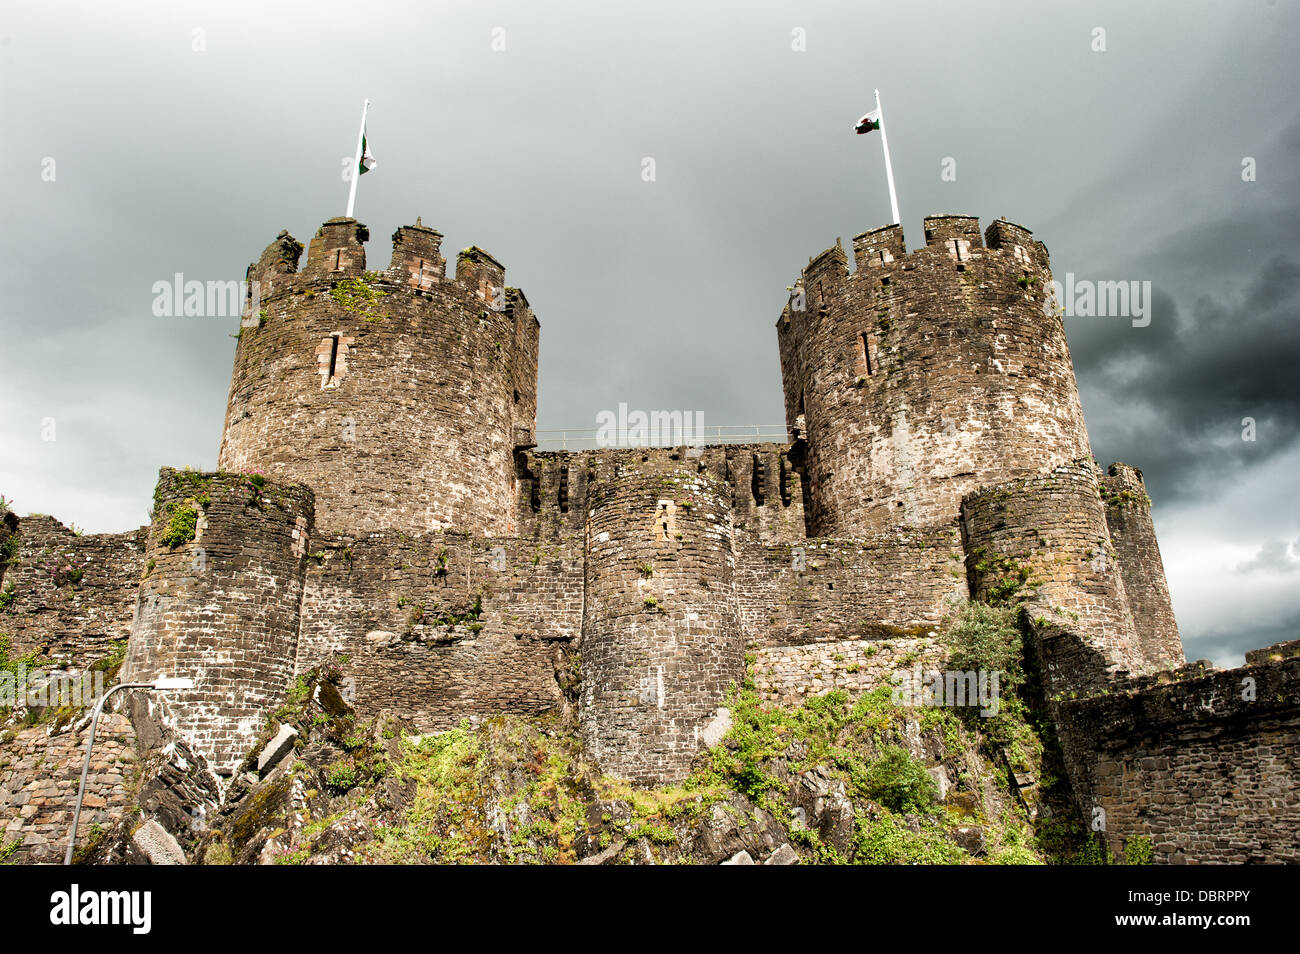 CONWY, Pays de Galles - Château de Conwy est un château médiéval construit par Édouard I à la fin du 13e siècle. Elle fait partie d'une ville fortifiée de Conwy et occupe un point stratégique sur la rivière Conwy. Il est répertorié comme un site du patrimoine mondial. Banque D'Images